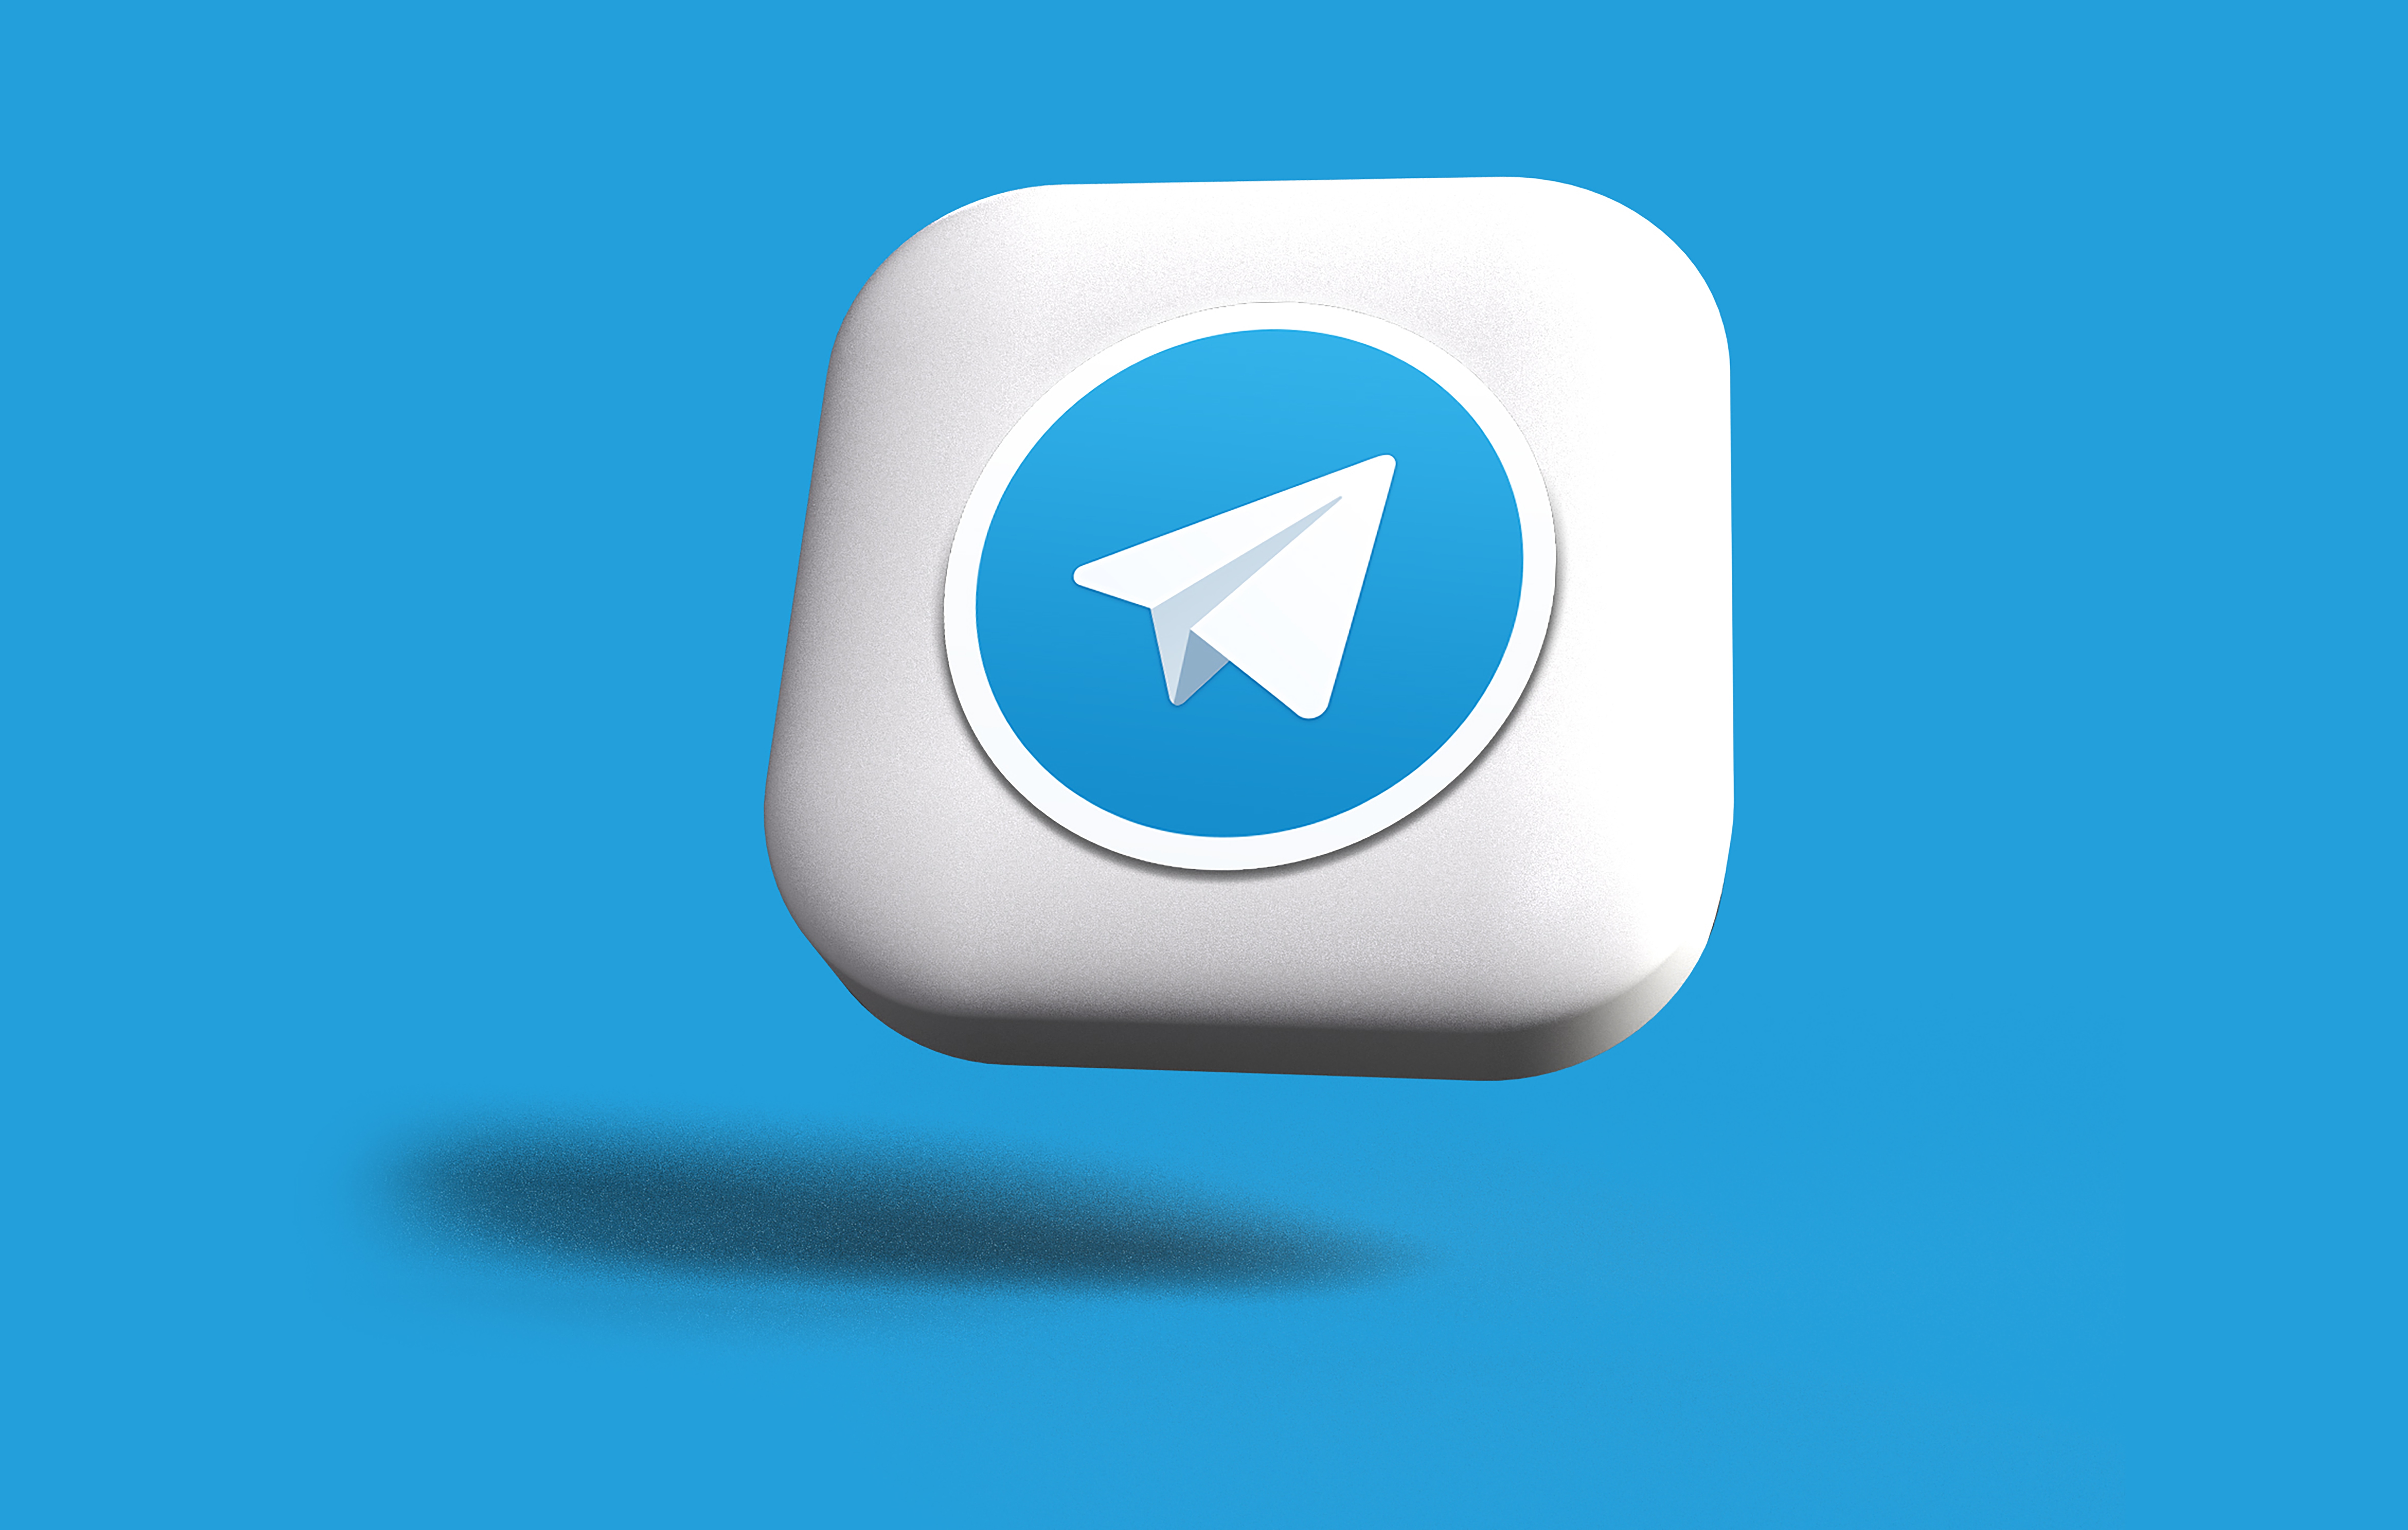 اصول مهم و تاثیر گذار در طراحی بنر تبلیغاتی تلگرام